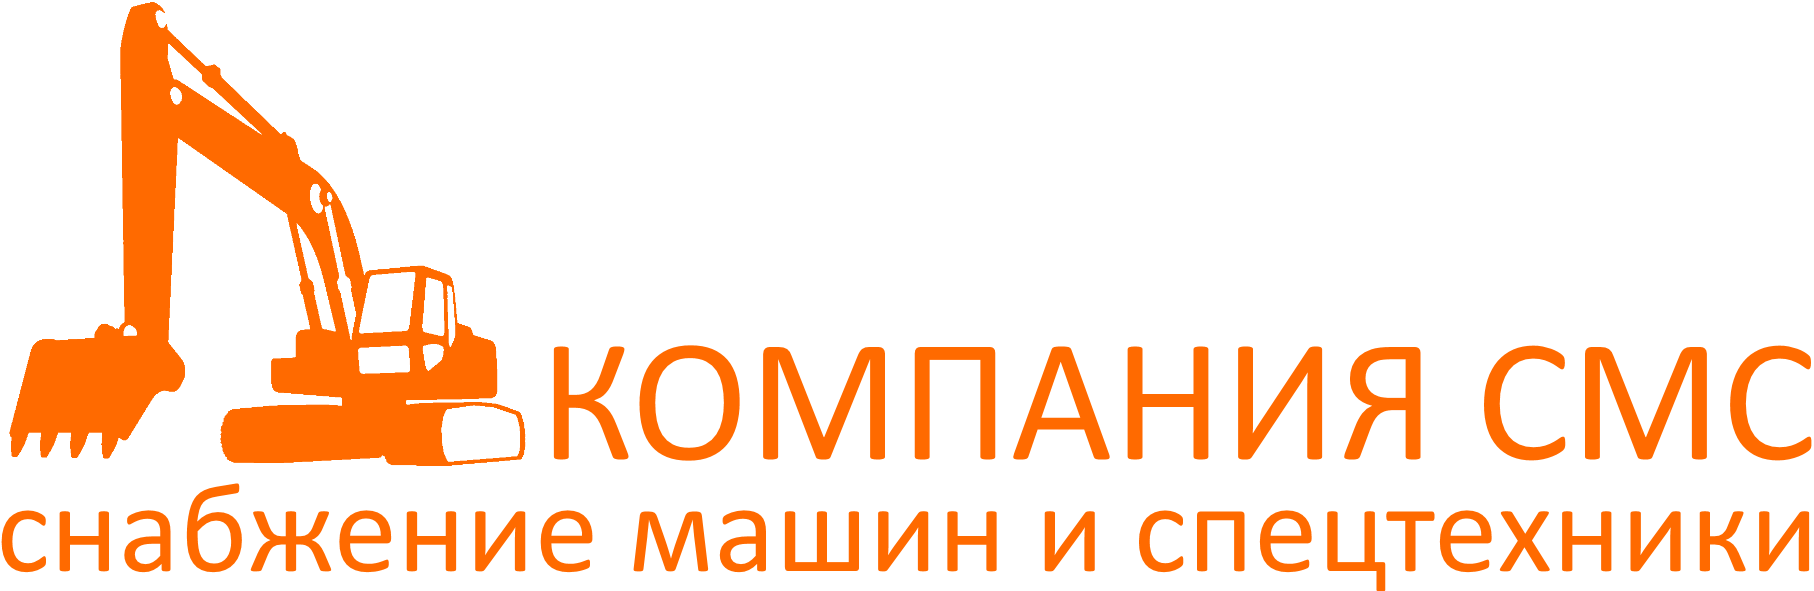 Компания СМС логотип